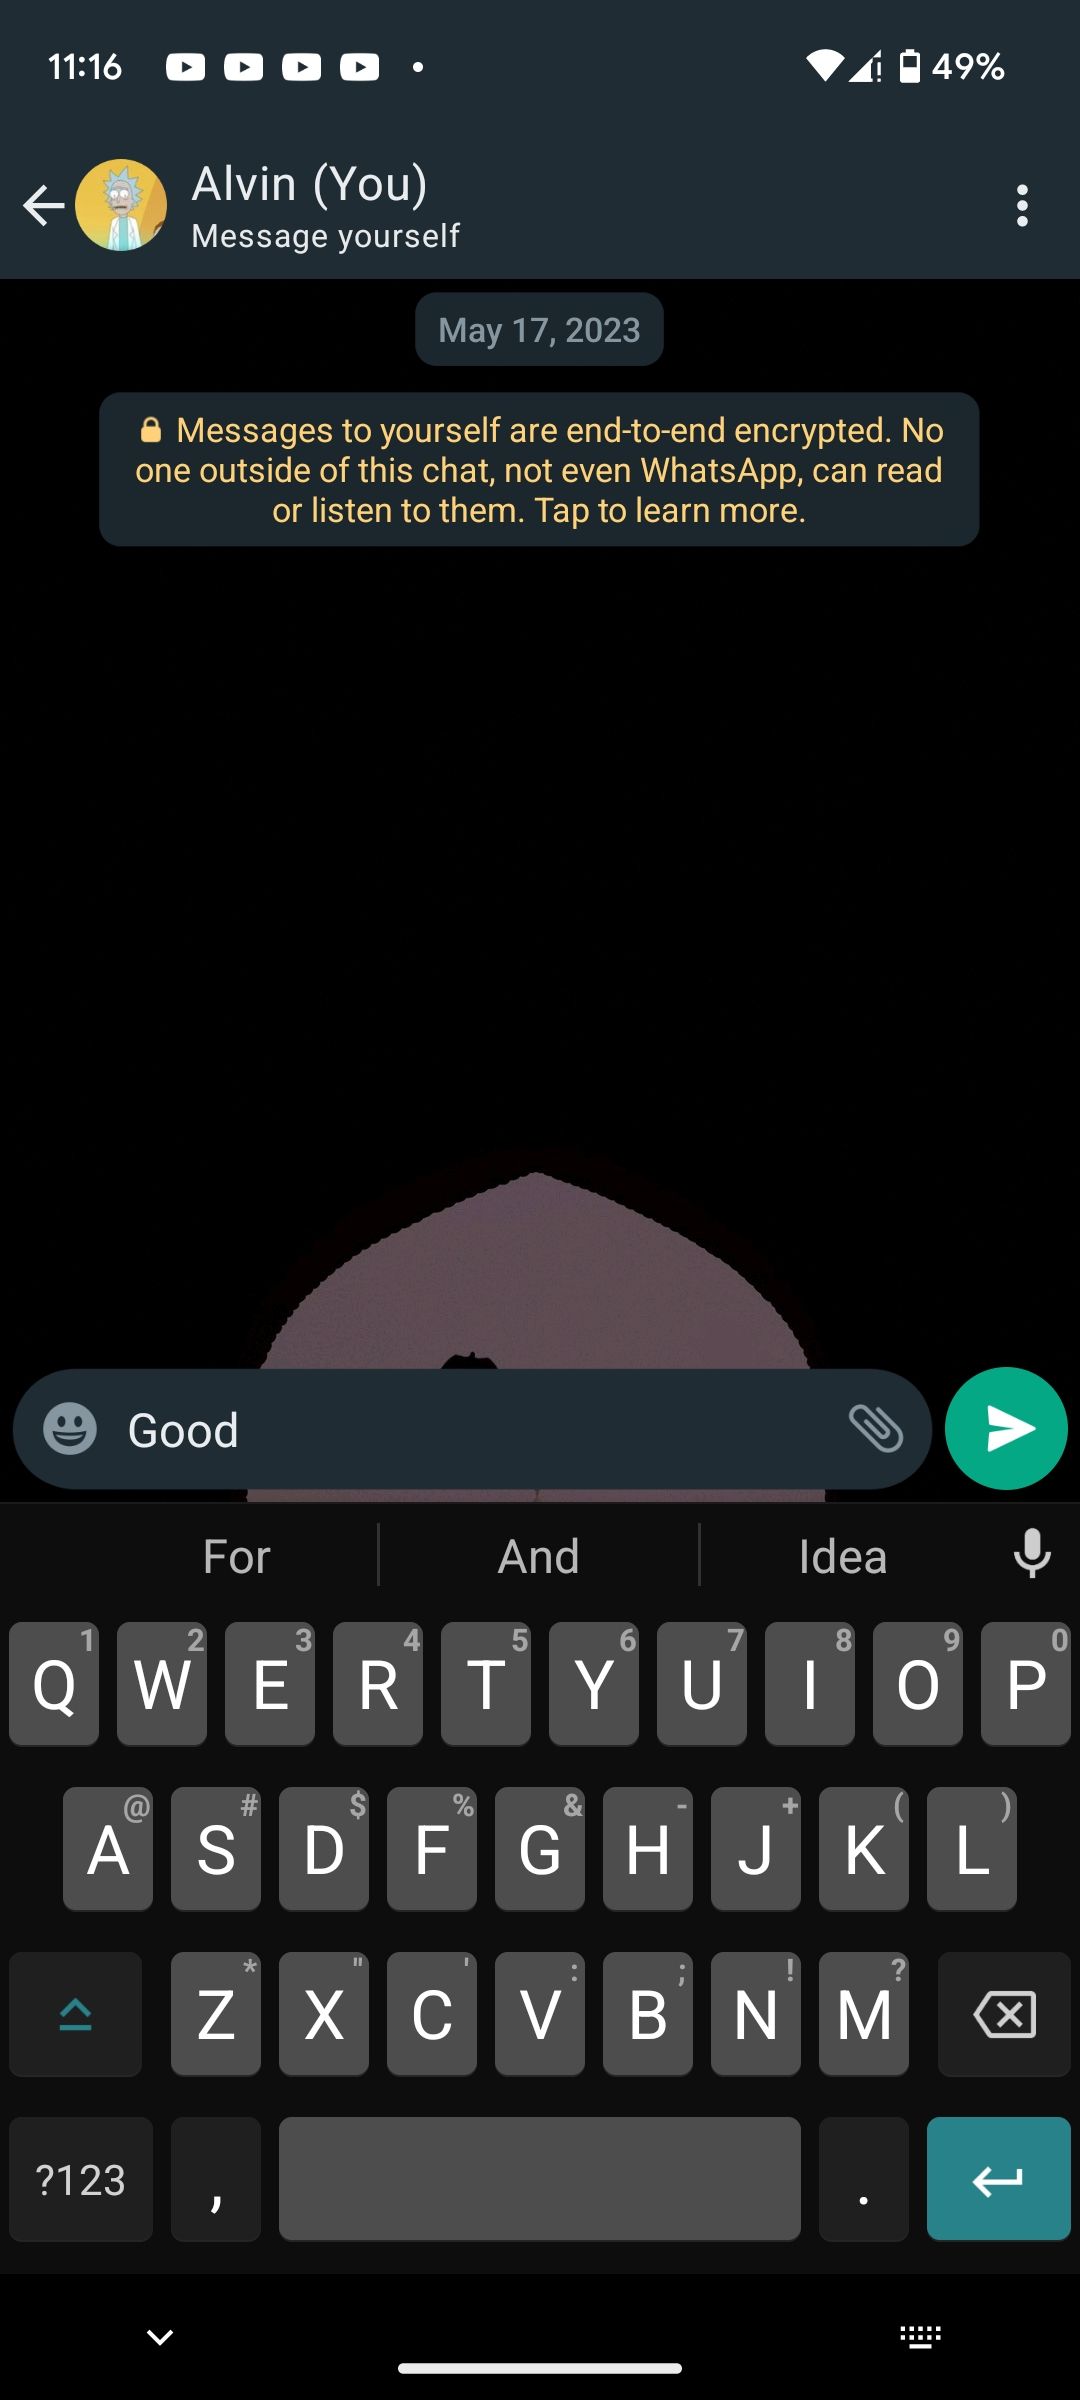 Text suggestions in OpenBoard keyboard app